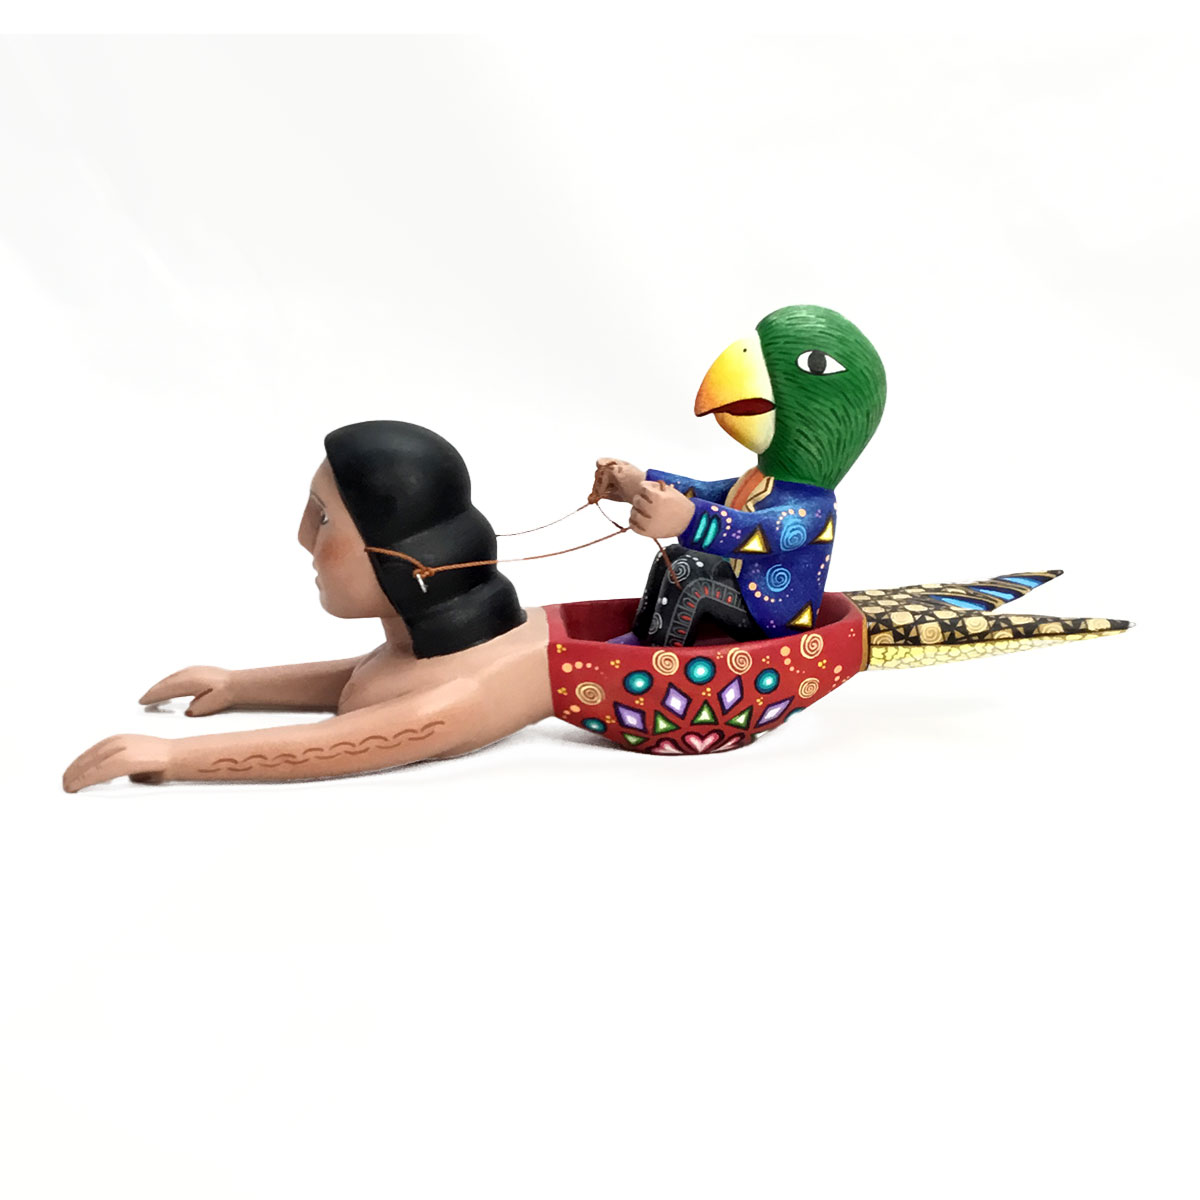 Agustín Cruz Prudencio Agustín Cruz Prudencio and Carmen Sosa Ojeda: Mermaid with Parrot Fantasy